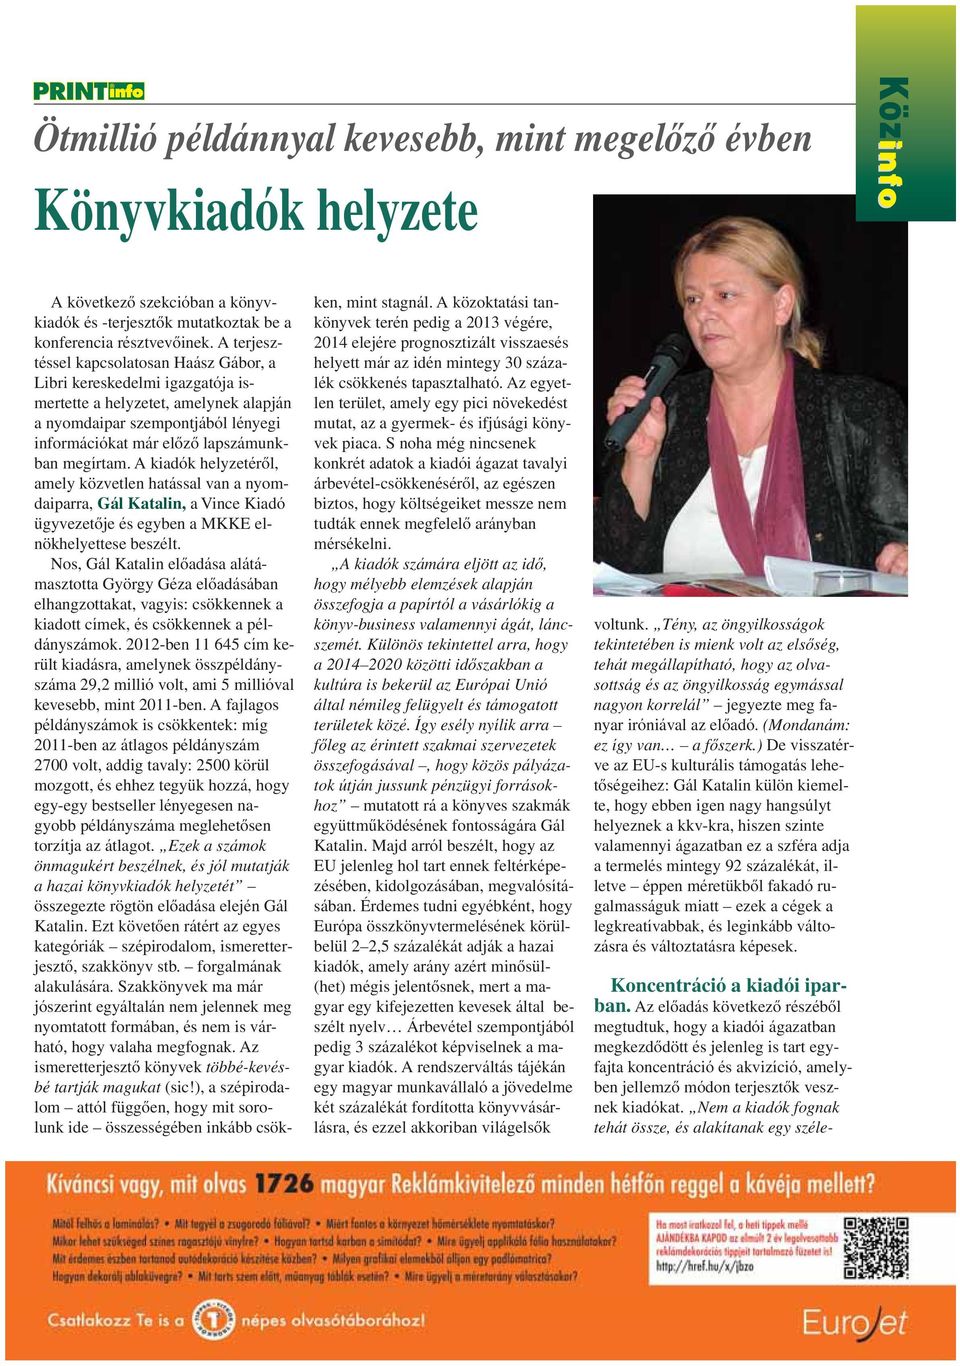 A kiadók helyzetérôl, amely közvetlen hatással van a nyomdaiparra, Gál Katalin, a Vince Kiadó ügyvezetôje és egyben a MKKE elnökhelyettese beszélt.